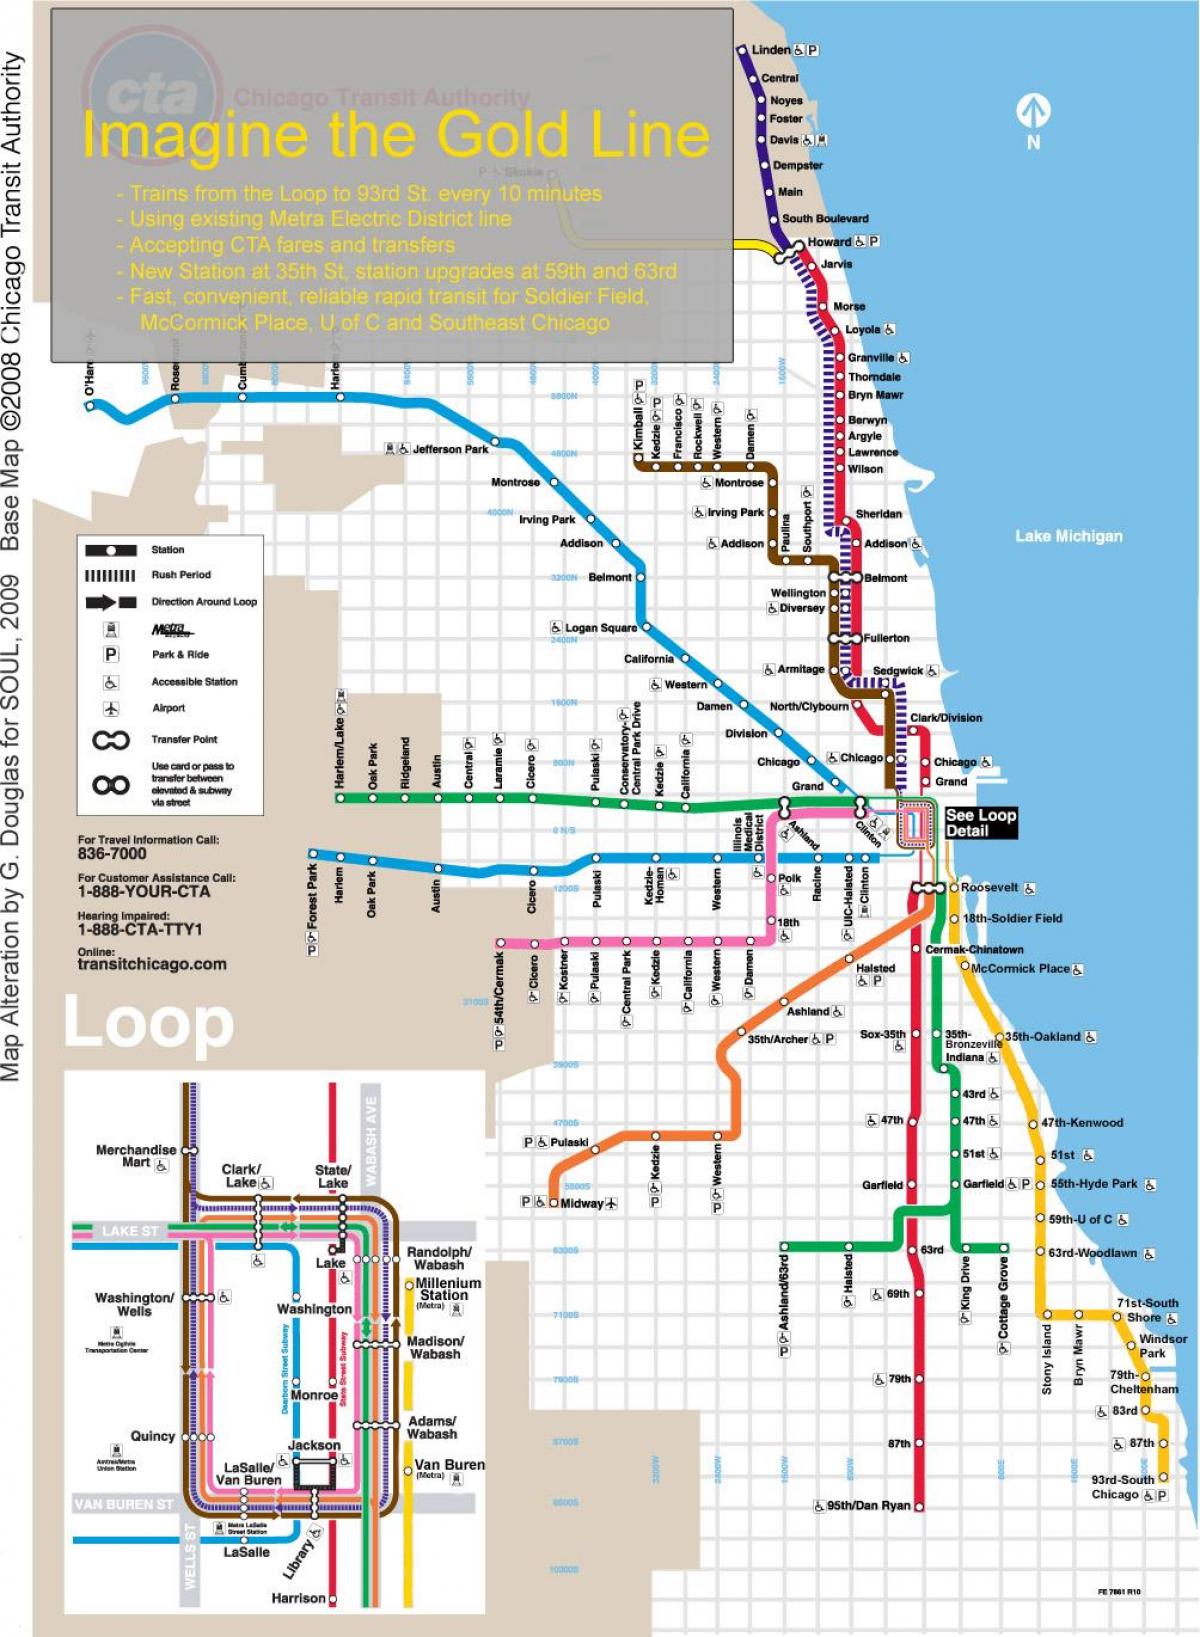 Чикаго галт тэрэгний зураг цэнхэр шугам